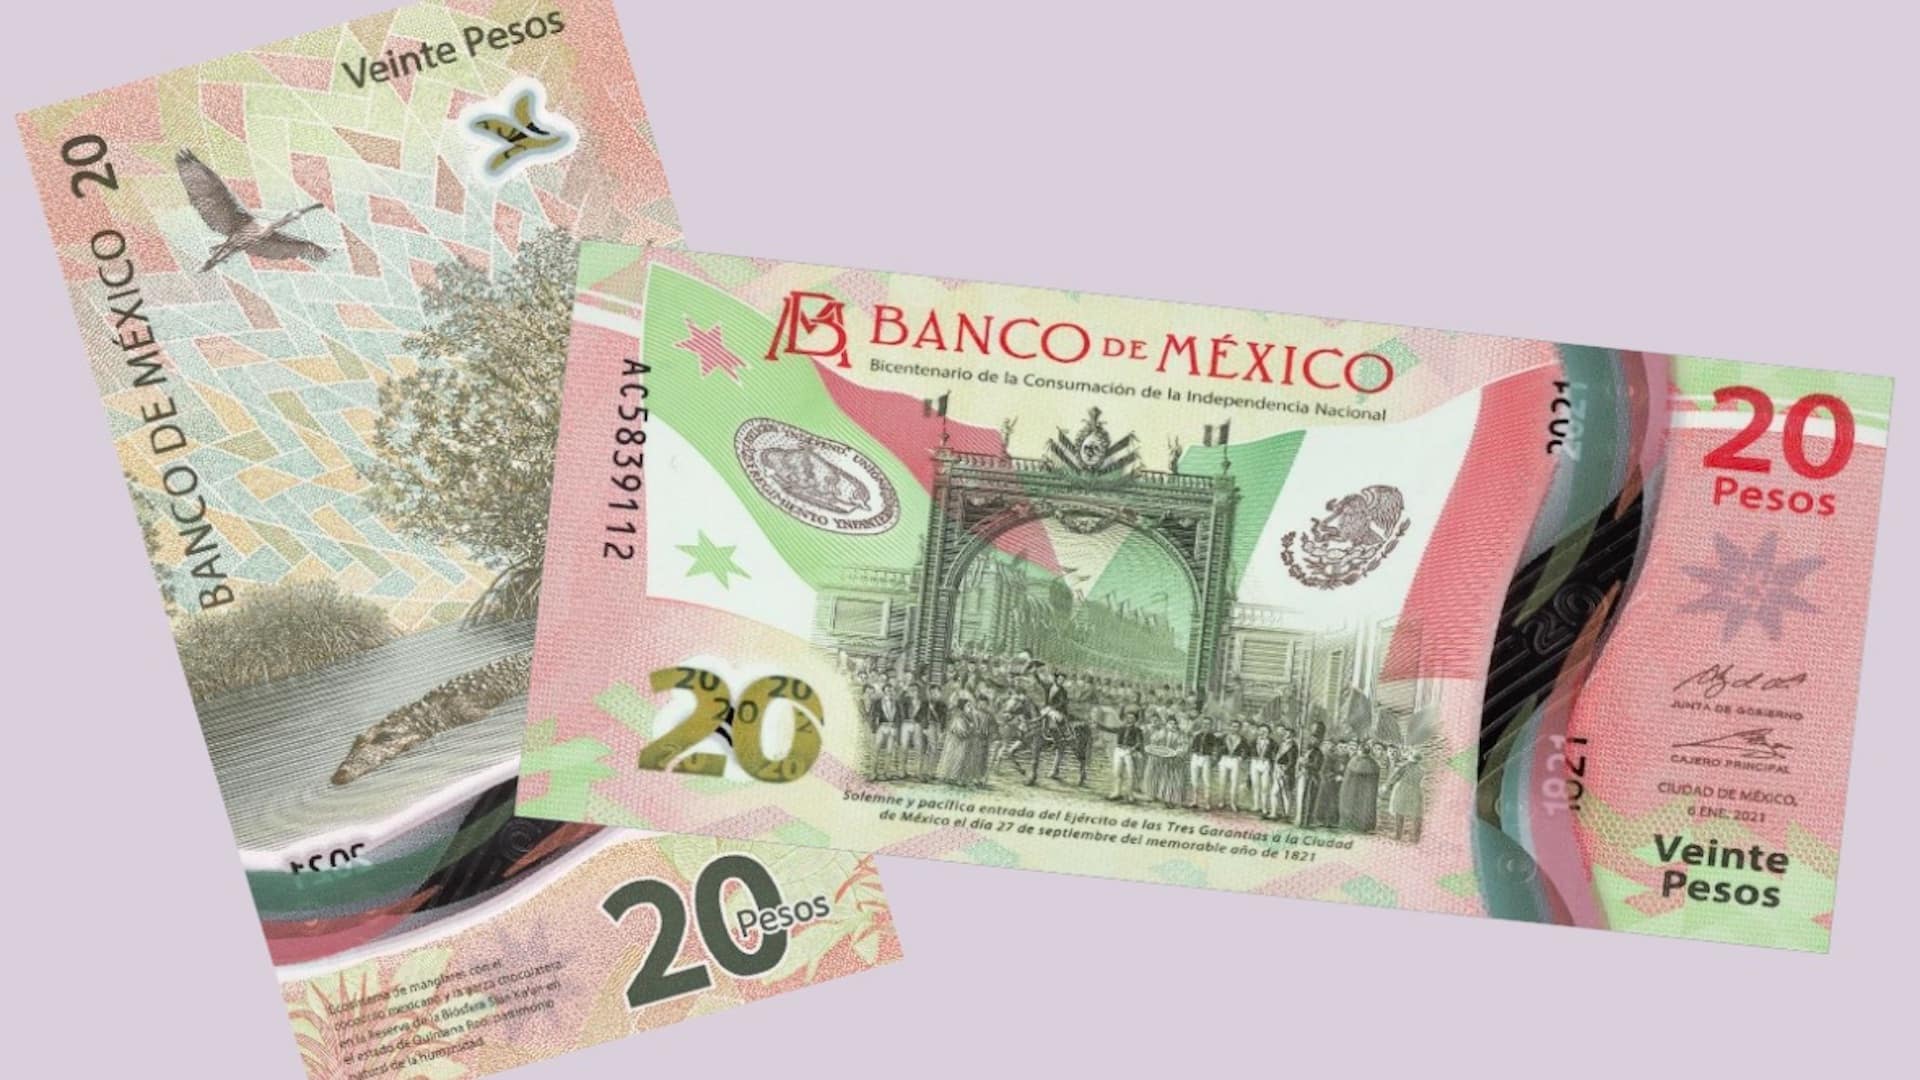 ¡Ve diciéndole adiós! Banxico eliminará el nuevo billete de 20 pesos ¿Qué pasará? Chécalo aquí